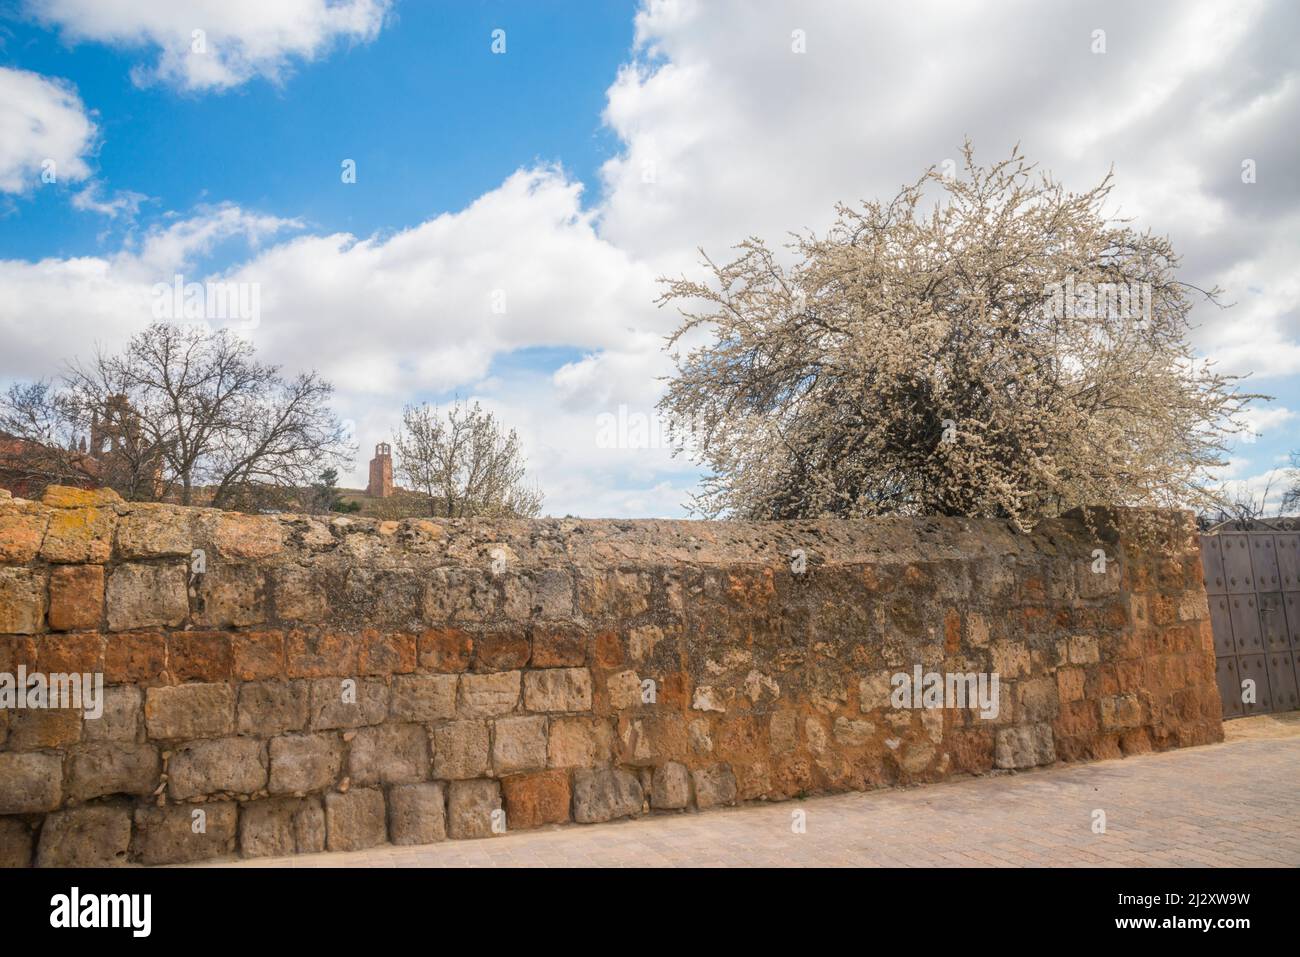 Flowered tree and stone wall. Ayllon, Segovia province, Castilla Leon, Spain. Stock Photo